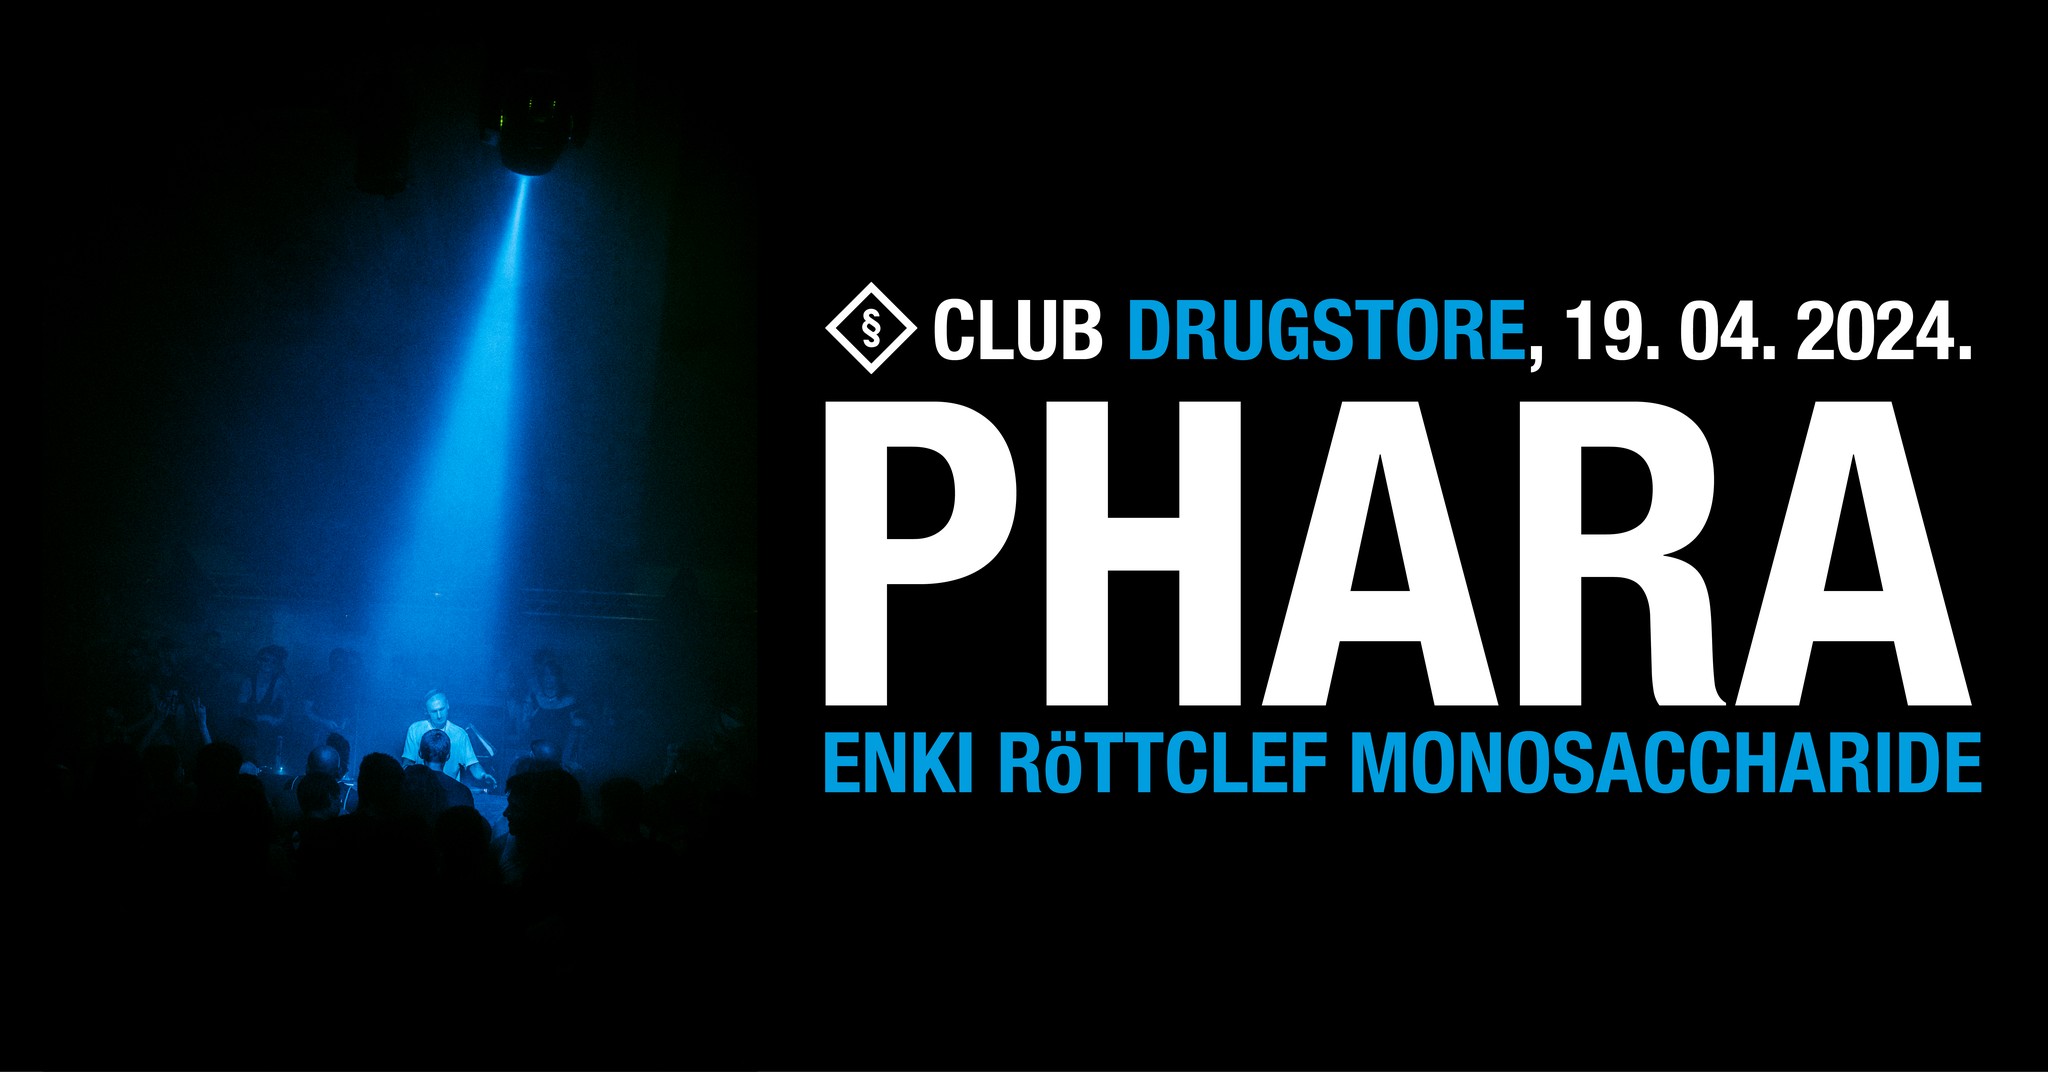 Phara, Enki, Röttclef, Monosaccharide 19.04.2024 Drugstore